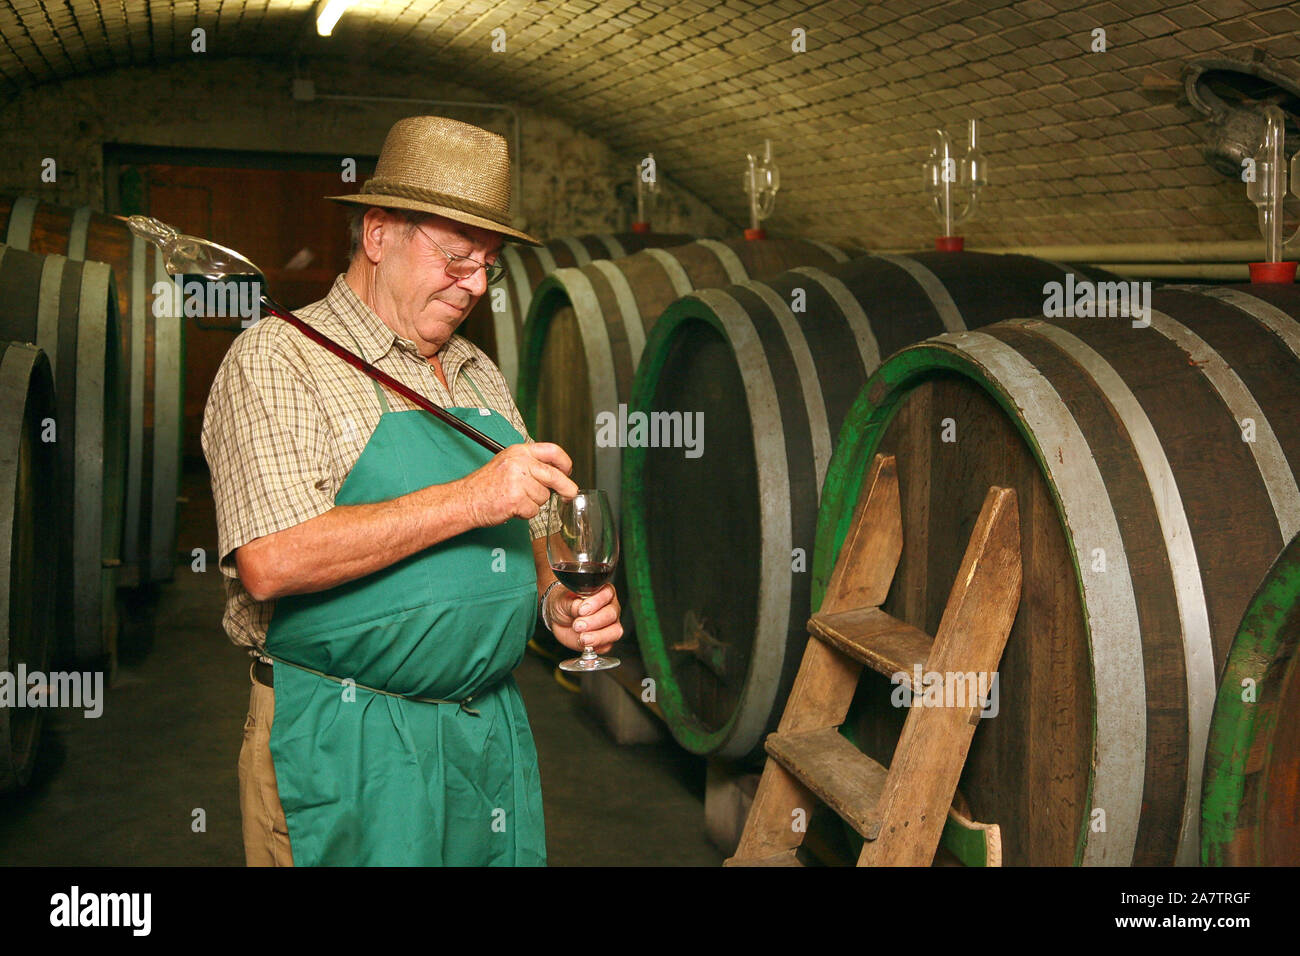 Ein Winzer im Weinkeller probiert einen Wein Stock Photo